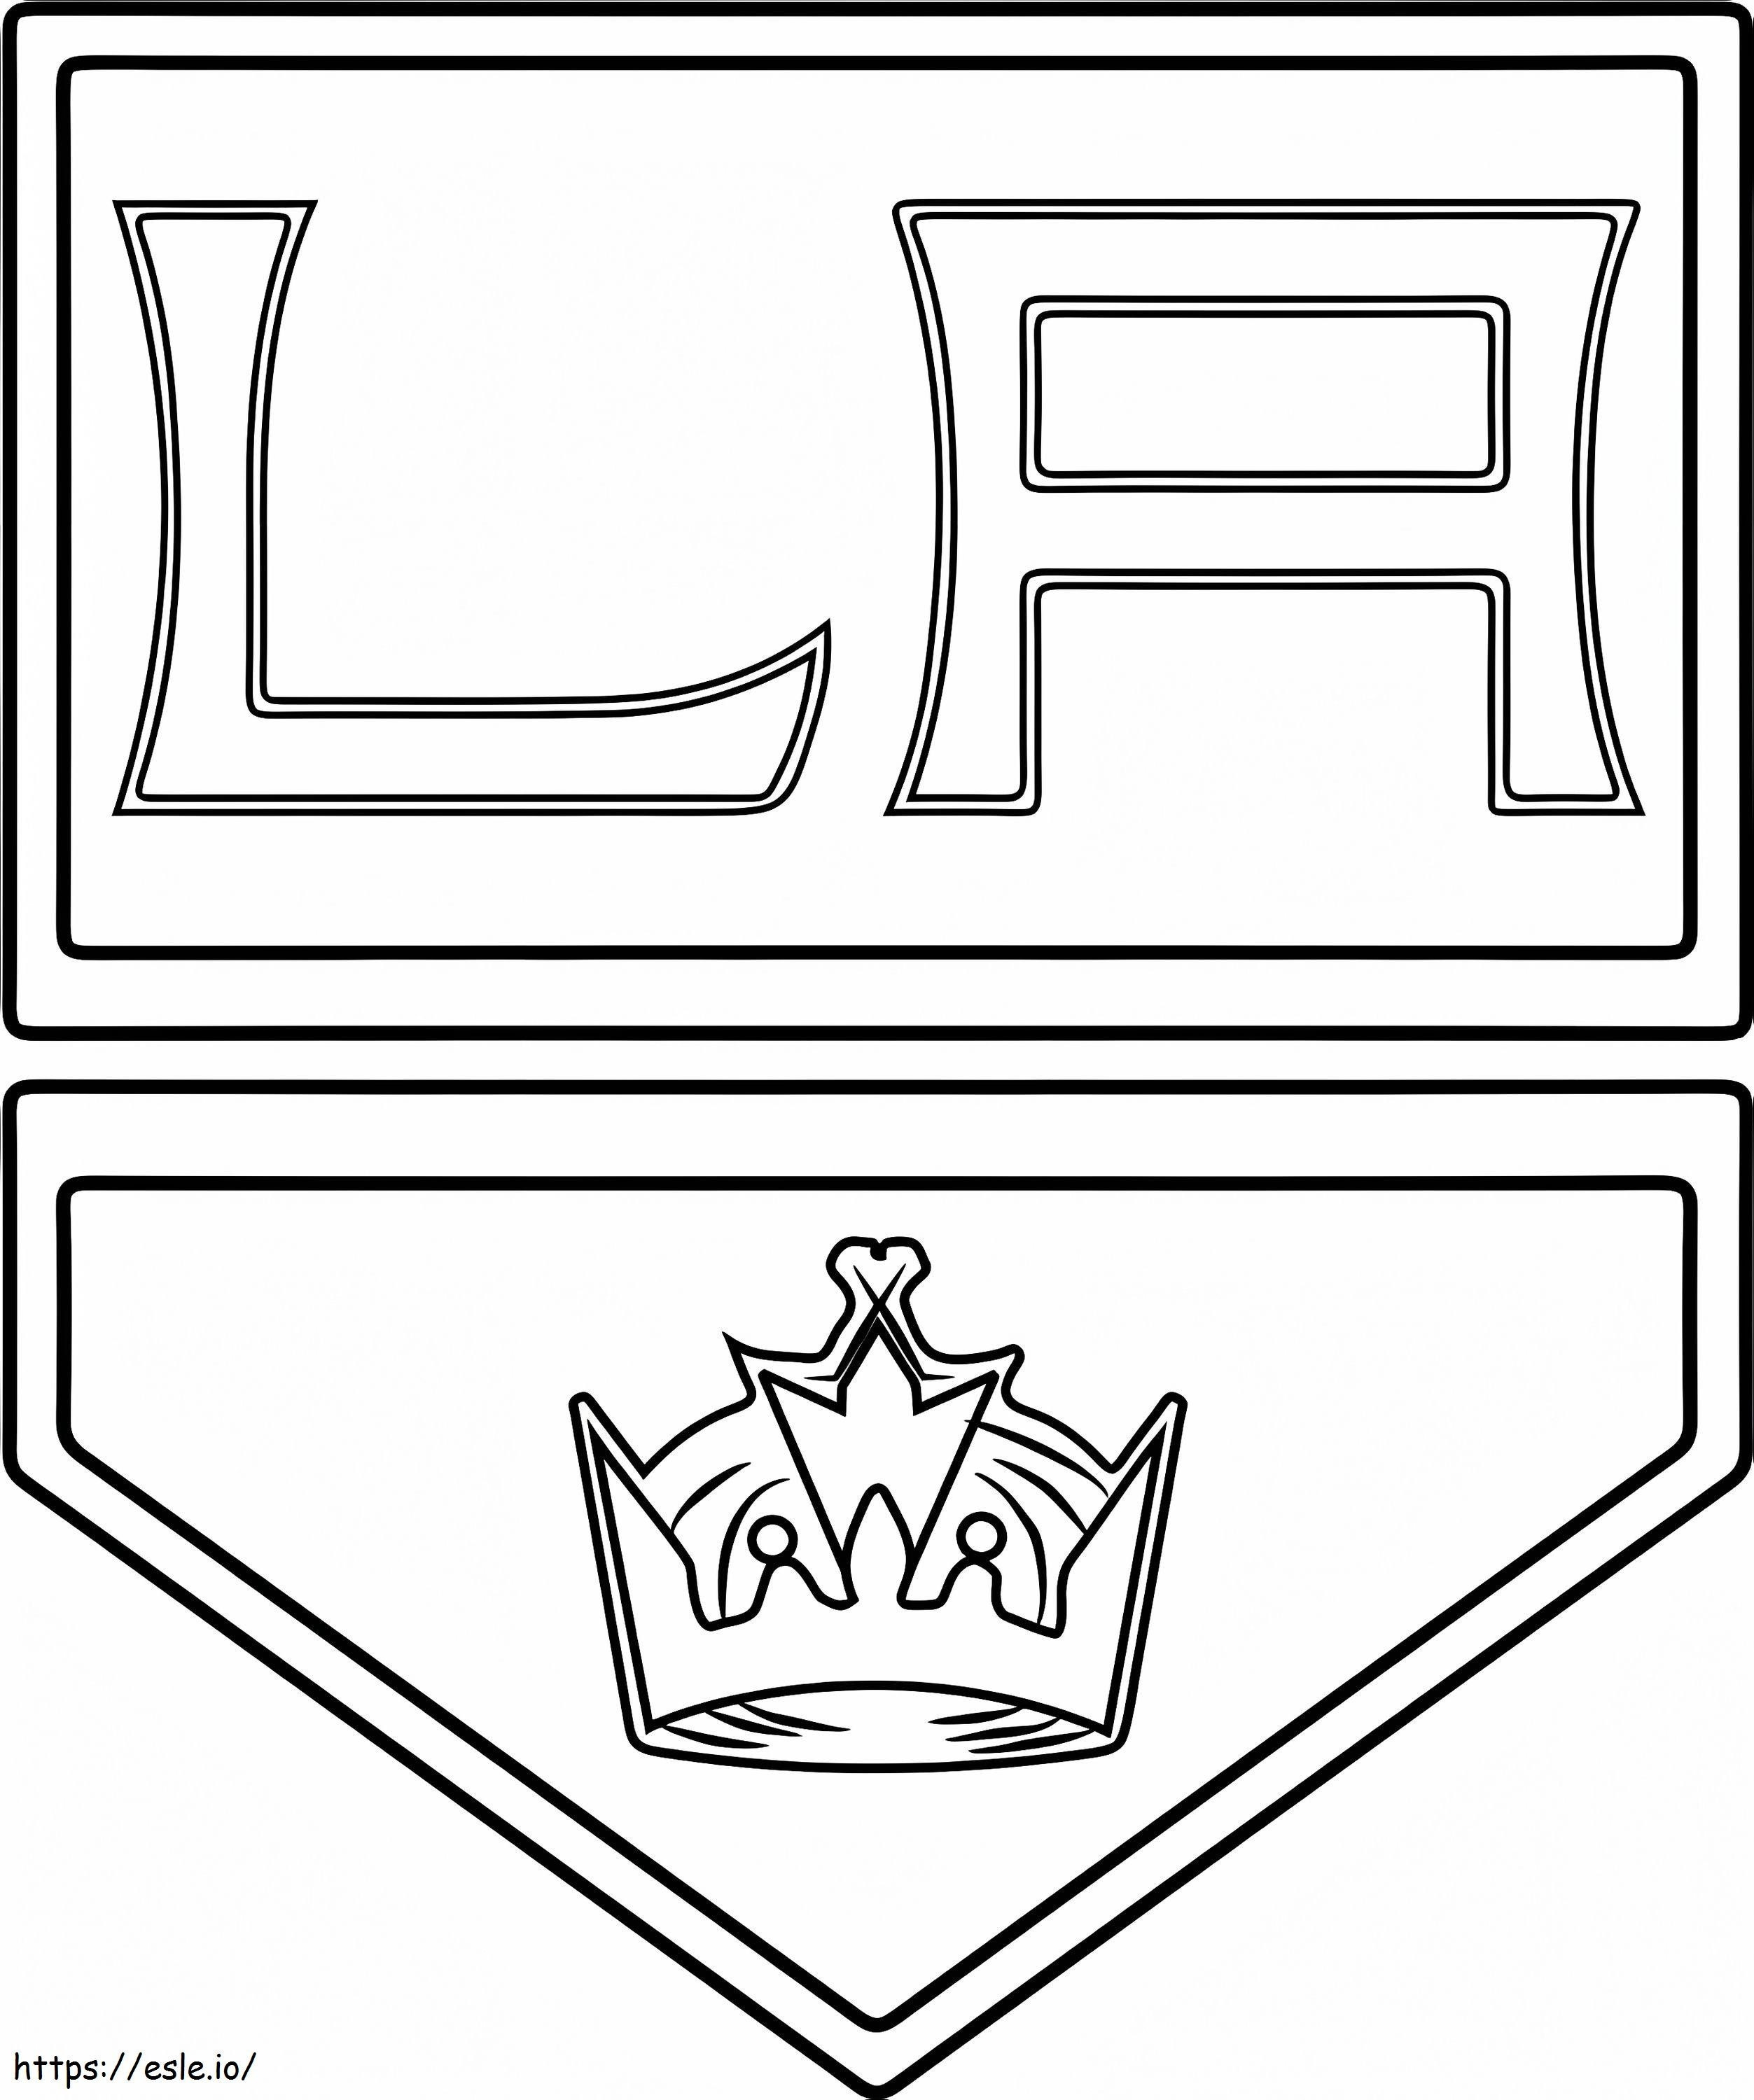 Los Angeles Kings-logo kleurplaat kleurplaat